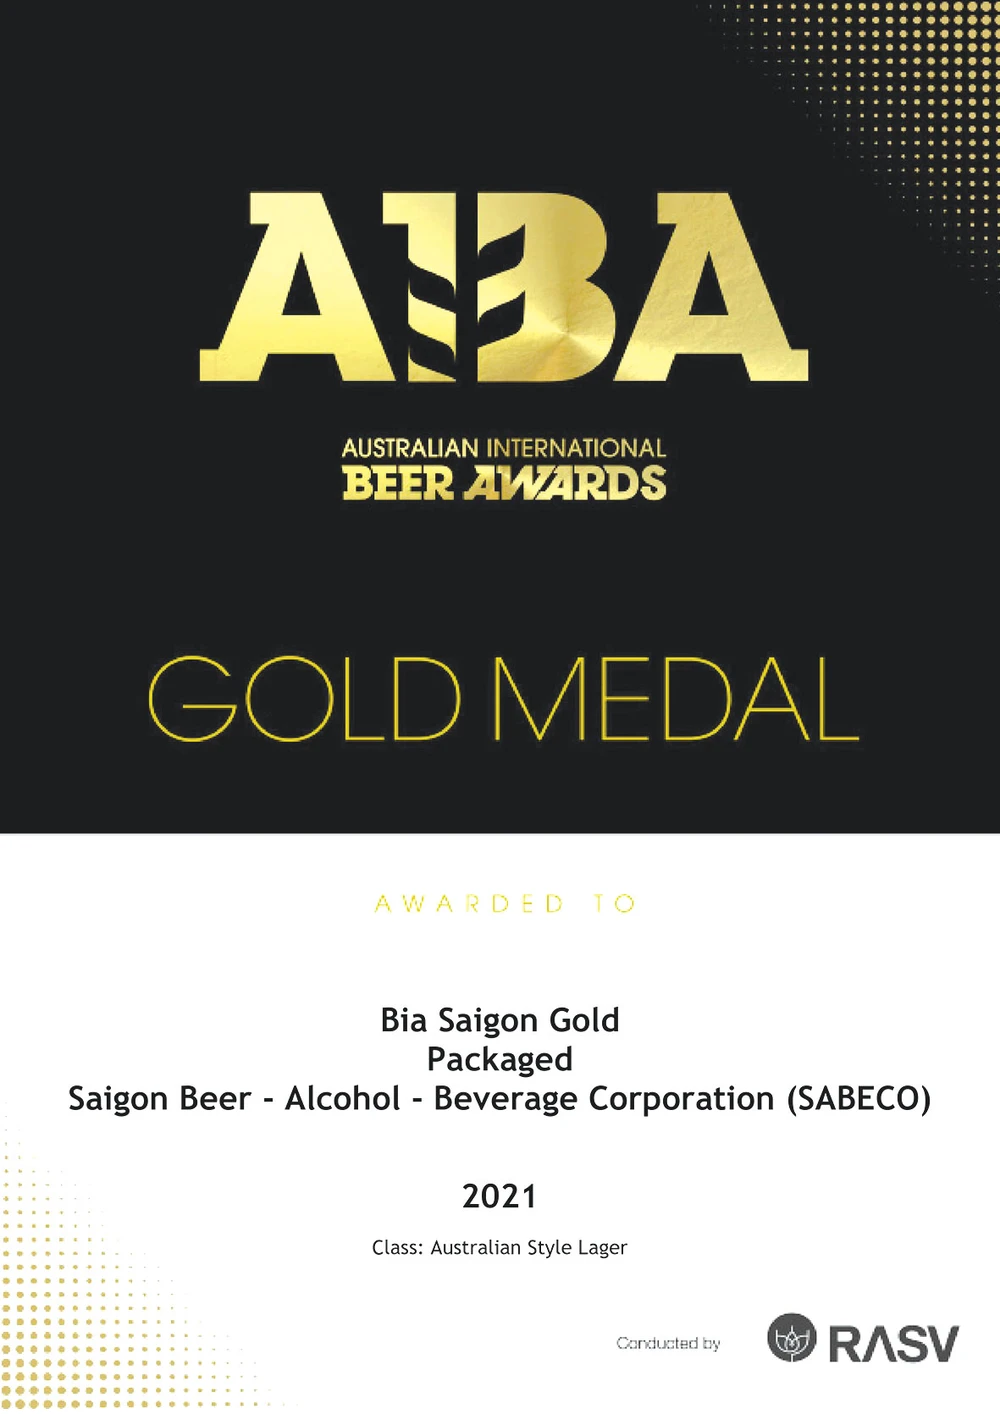 Bia Saigon khẳng định thương hiệu ở Giải thưởng Bia quốc tế AIBA 2021